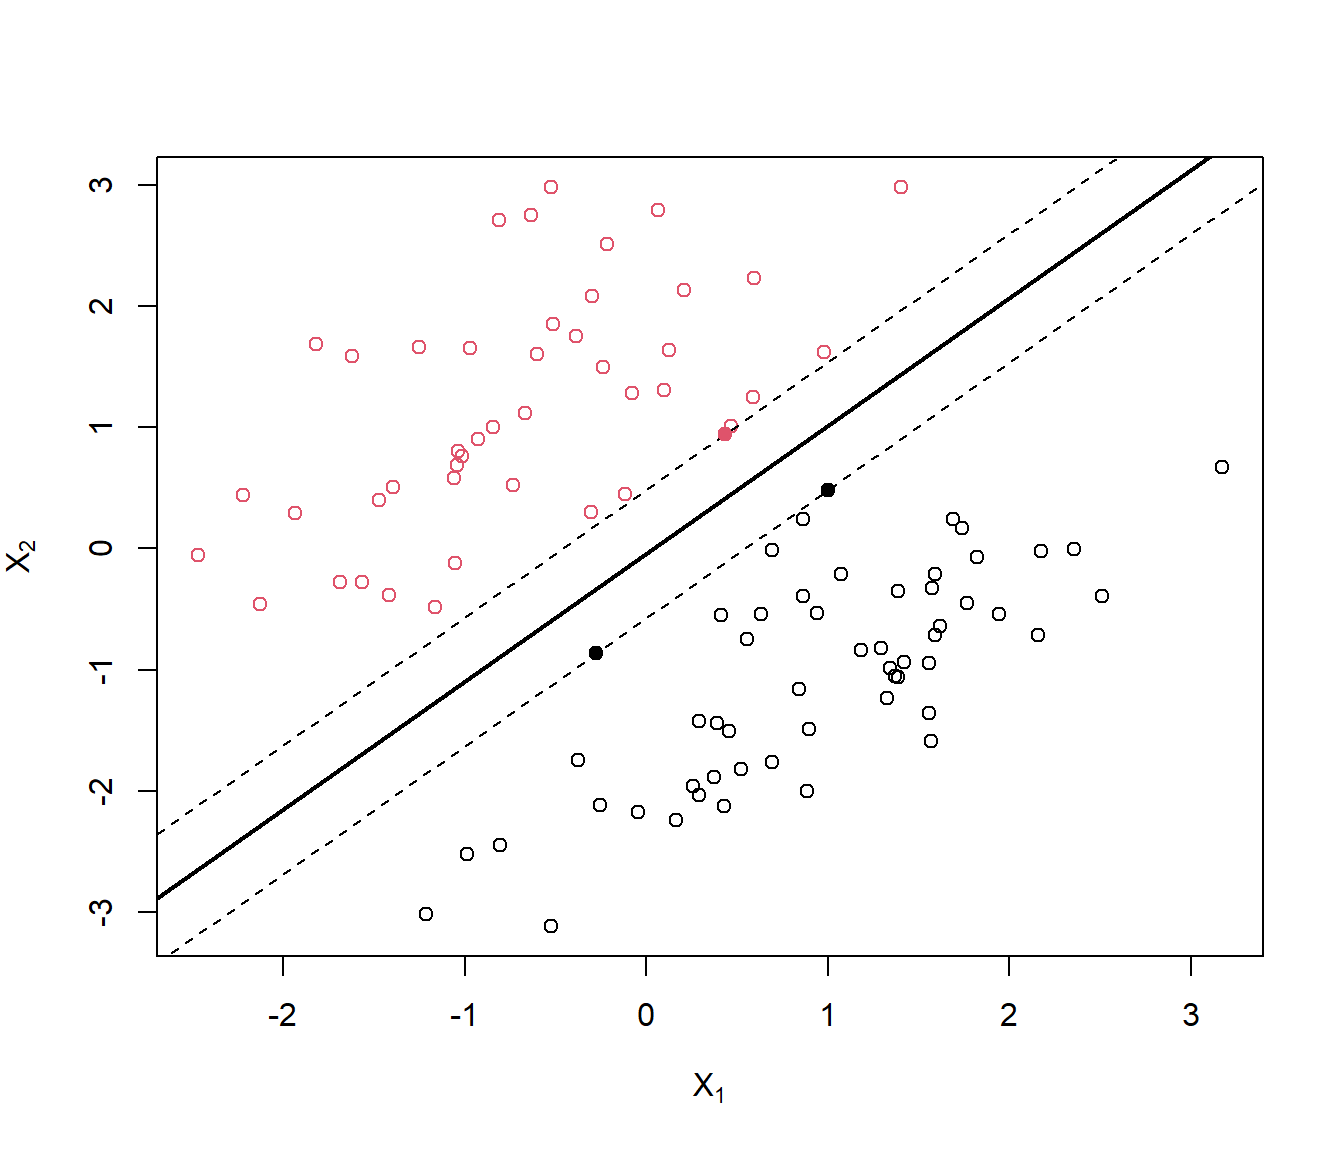 Ilustración de un clasificador de máximo margen con dos predictores (con datos simulados; los puntos se corresponden con las observaciones y el color, negro o rojo, con la clase). La línea sólida es el hiperplano de máximo margen y los puntos sólidos los vectores de soporte (las líneas discontinuas se corresponden con la máxima distancia del hiperplano a las observaciones).